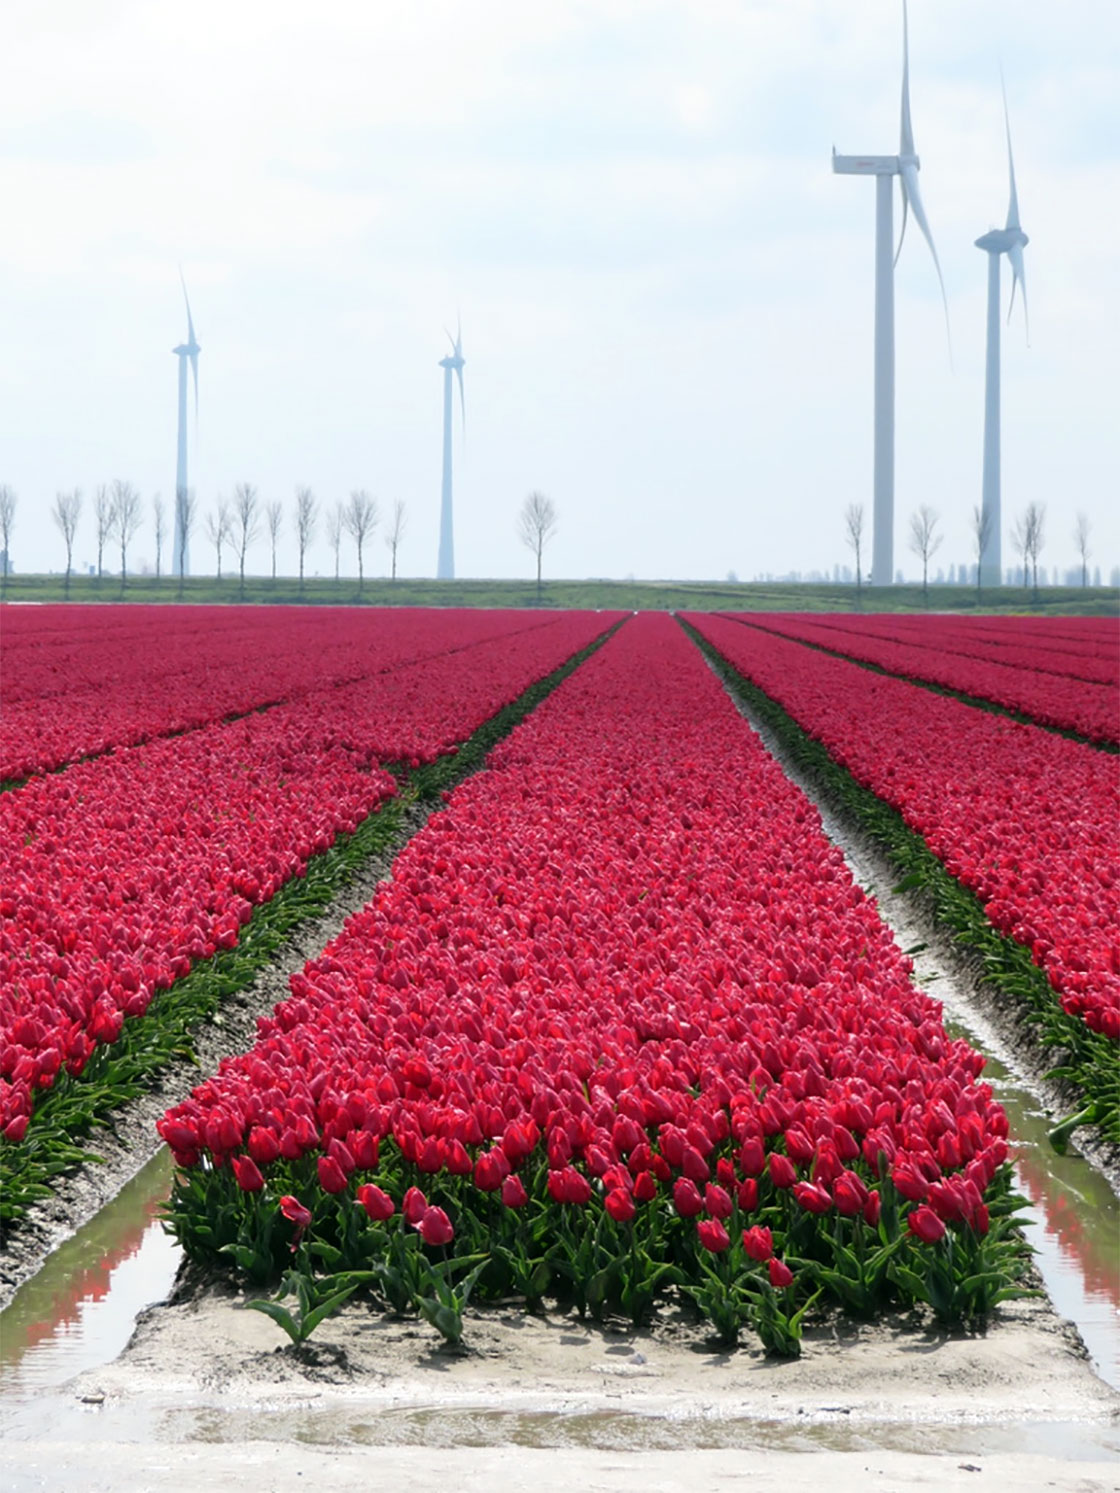 Campos de tulipanes en Holanda – Holandia.es, tu guía de Holanda